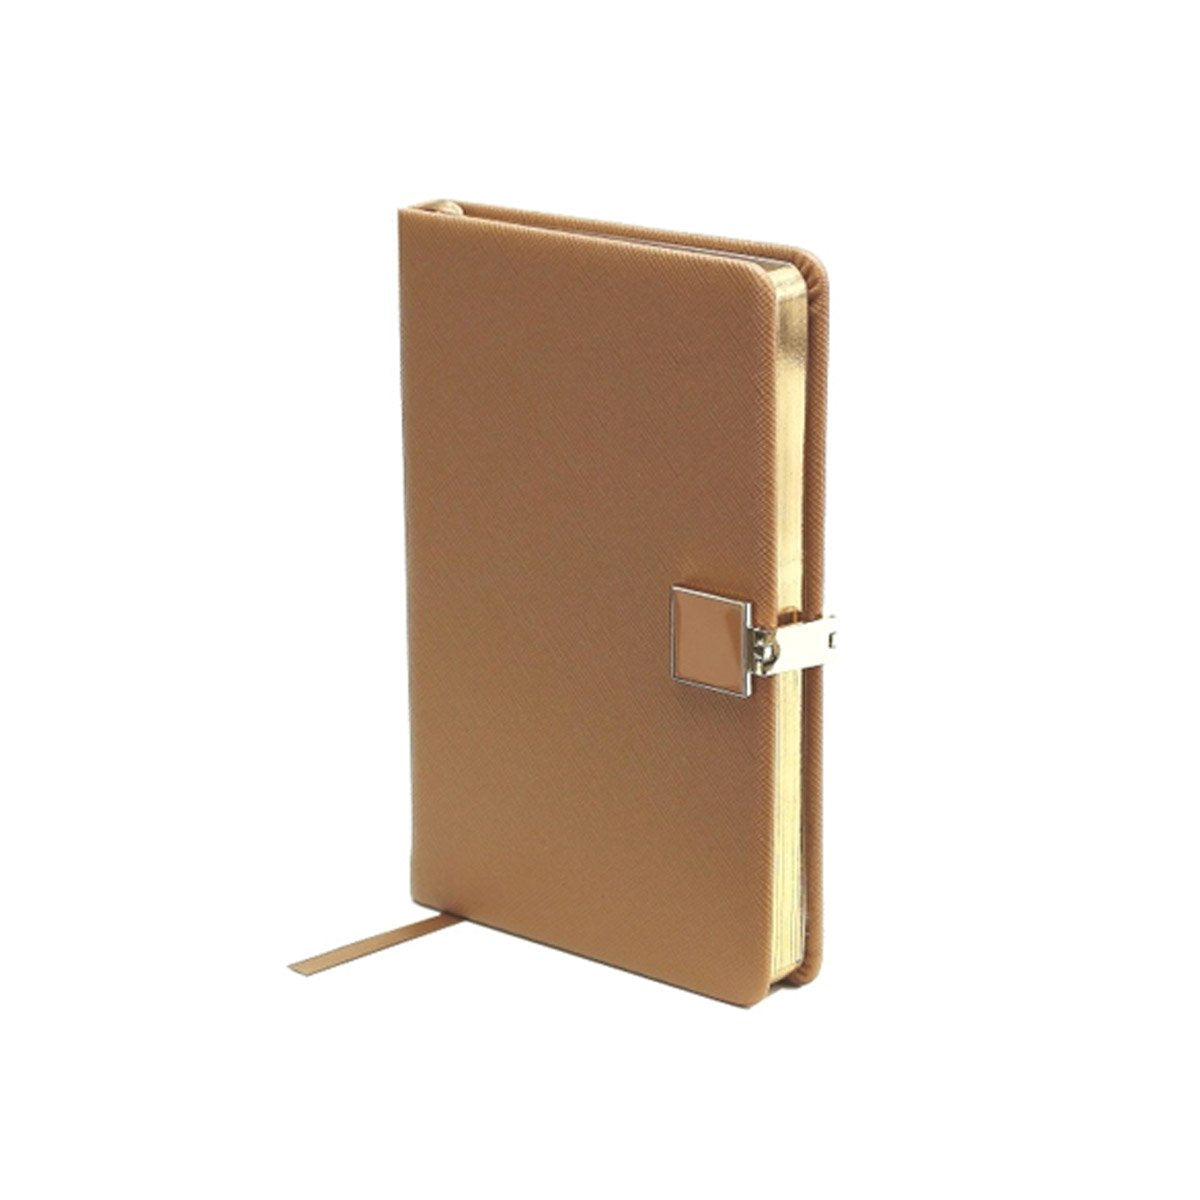 Tan & Gold A6 Notebook